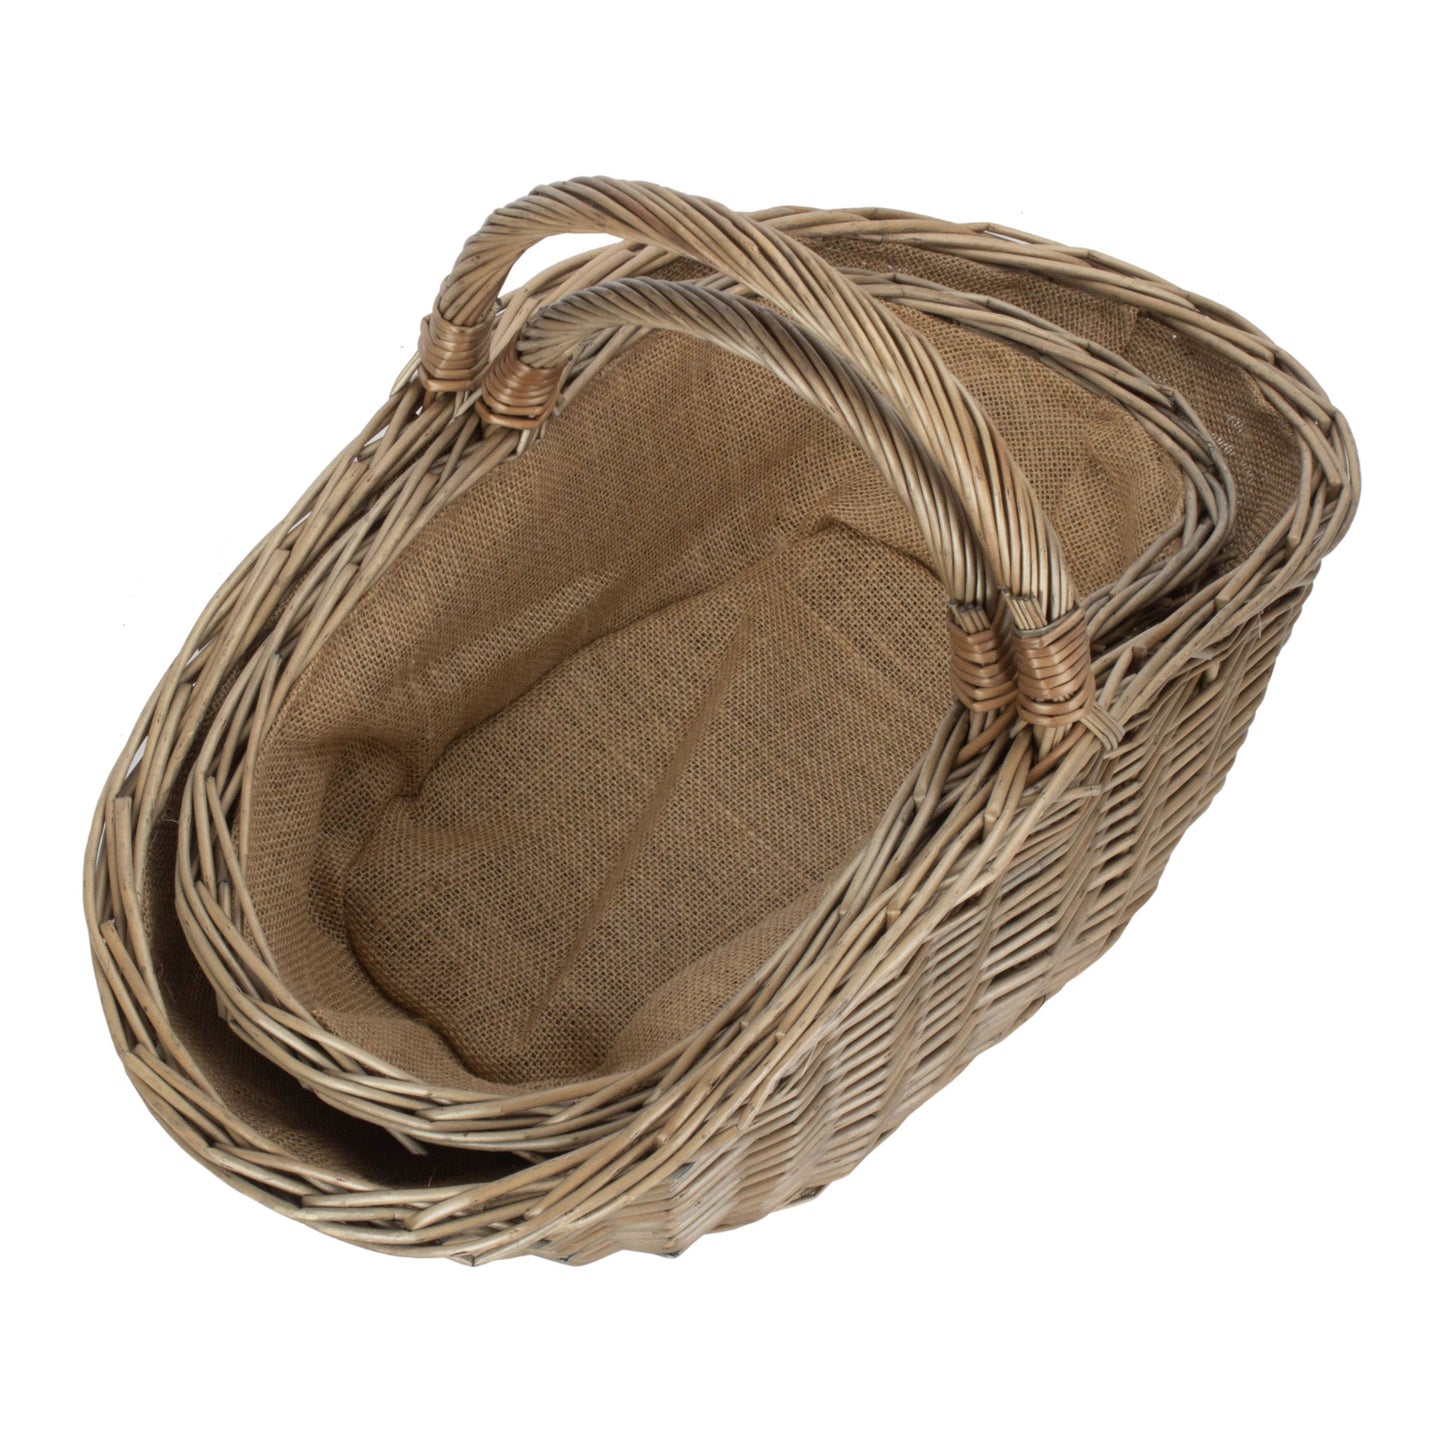 Antique Wash Harvesting Basket Set 2